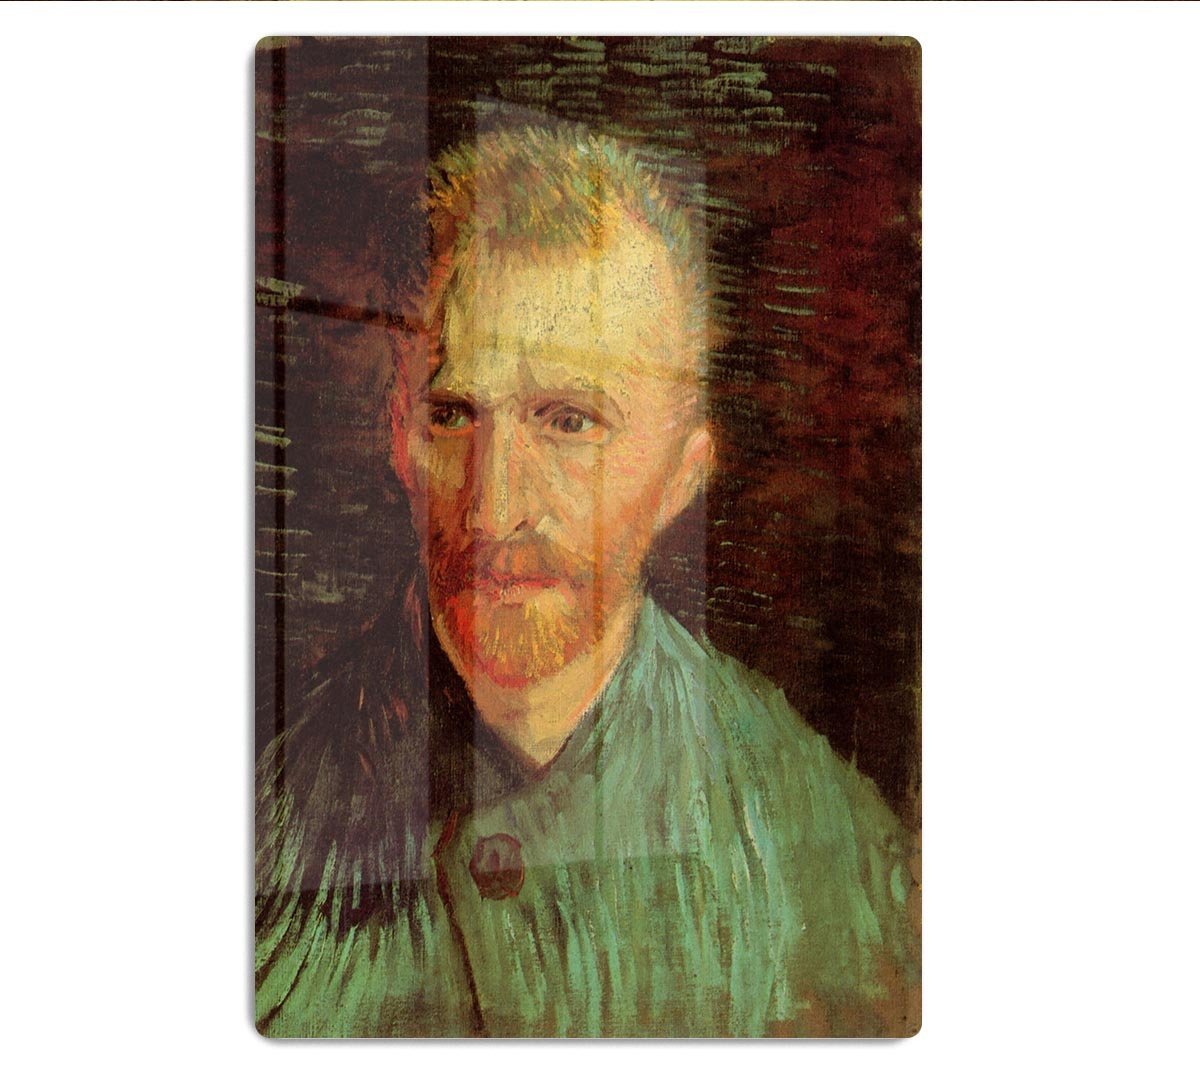 Self-Portrait 8 by Van Gogh HD Metal Print